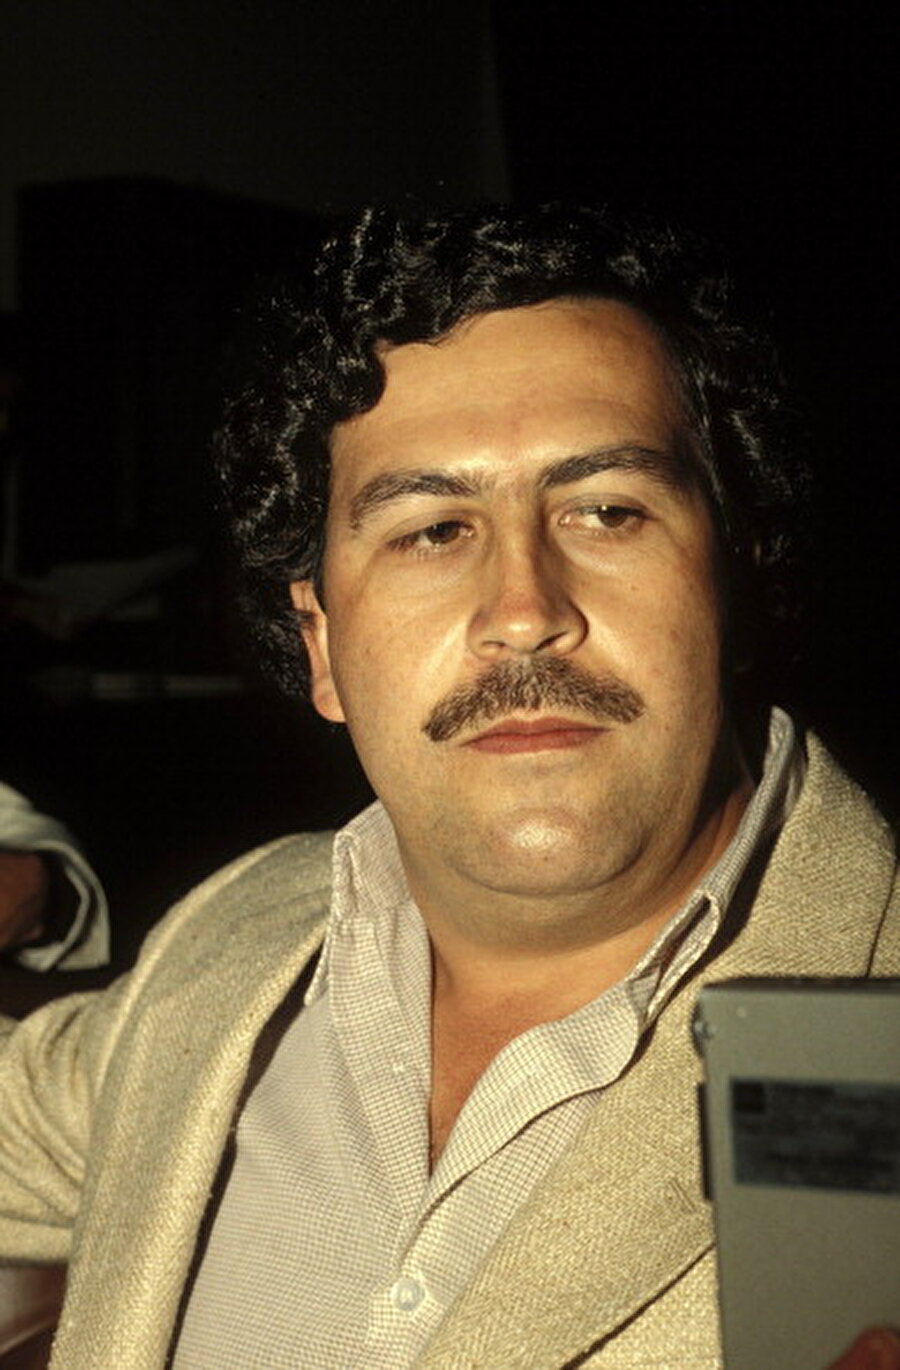 Hazine
Escobar, parasını paketlemek için aylık 2.500 dolarlık bant ve lastik harcaması yapıyordu.